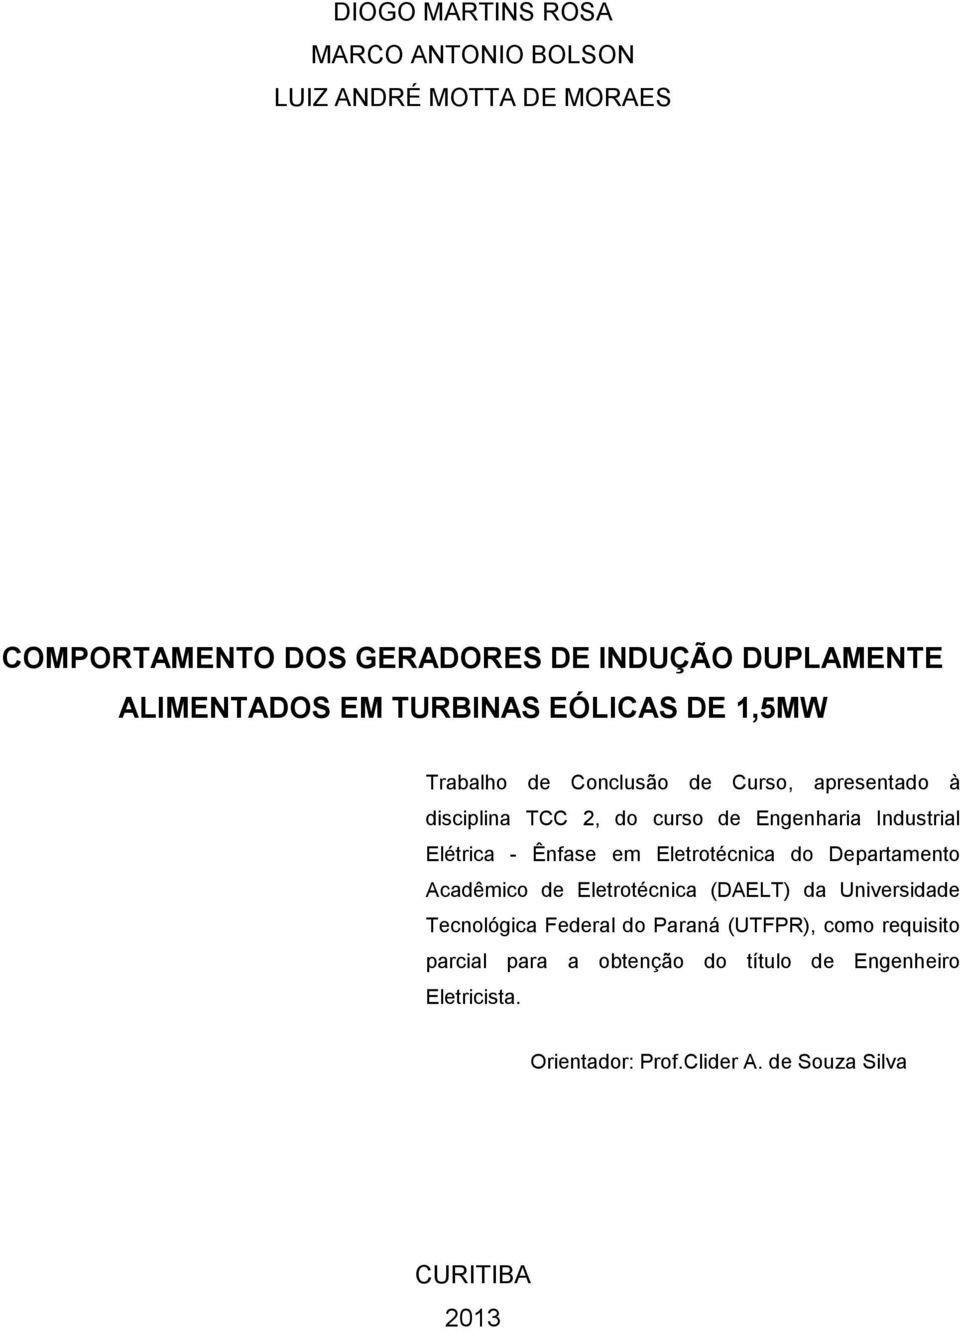 Elétrica - Ênfase em Eletrotécnica do Departamento Acadêmico de Eletrotécnica (DAELT) da Universidade Tecnológica Federal do Paraná